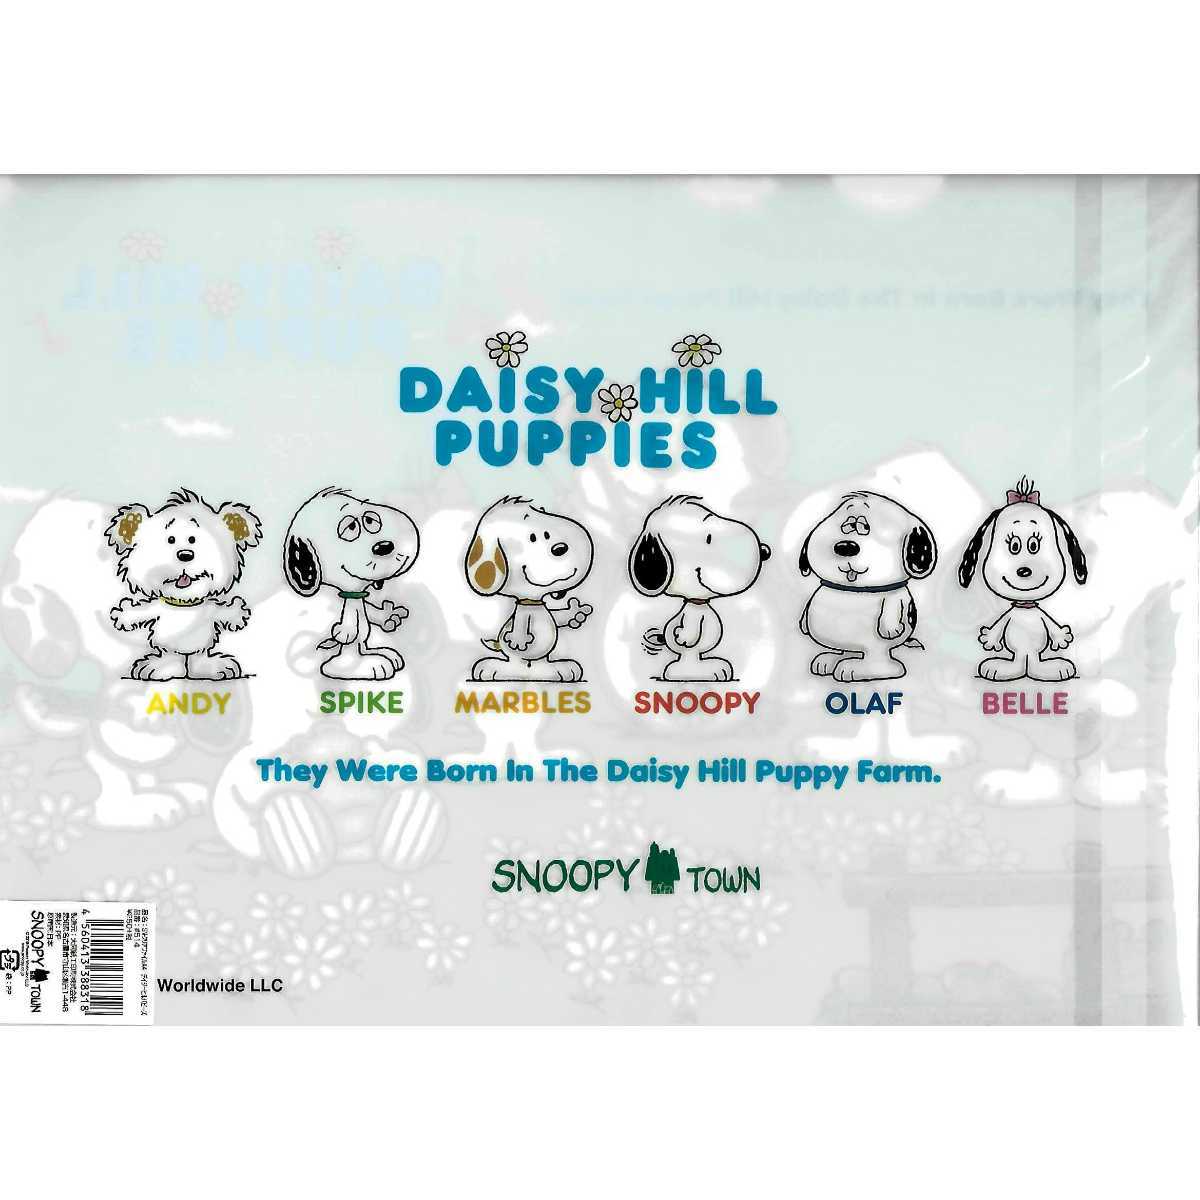 レア スヌーピータウンショップ 限定 日本上陸50周年 Daisy Hill Puppies クリアファイル オラフ スパイク アンディ 兄弟 子犬 スヌーピー 売買されたオークション情報 Yahooの商品情報をアーカイブ公開 オークファン Aucfan Com